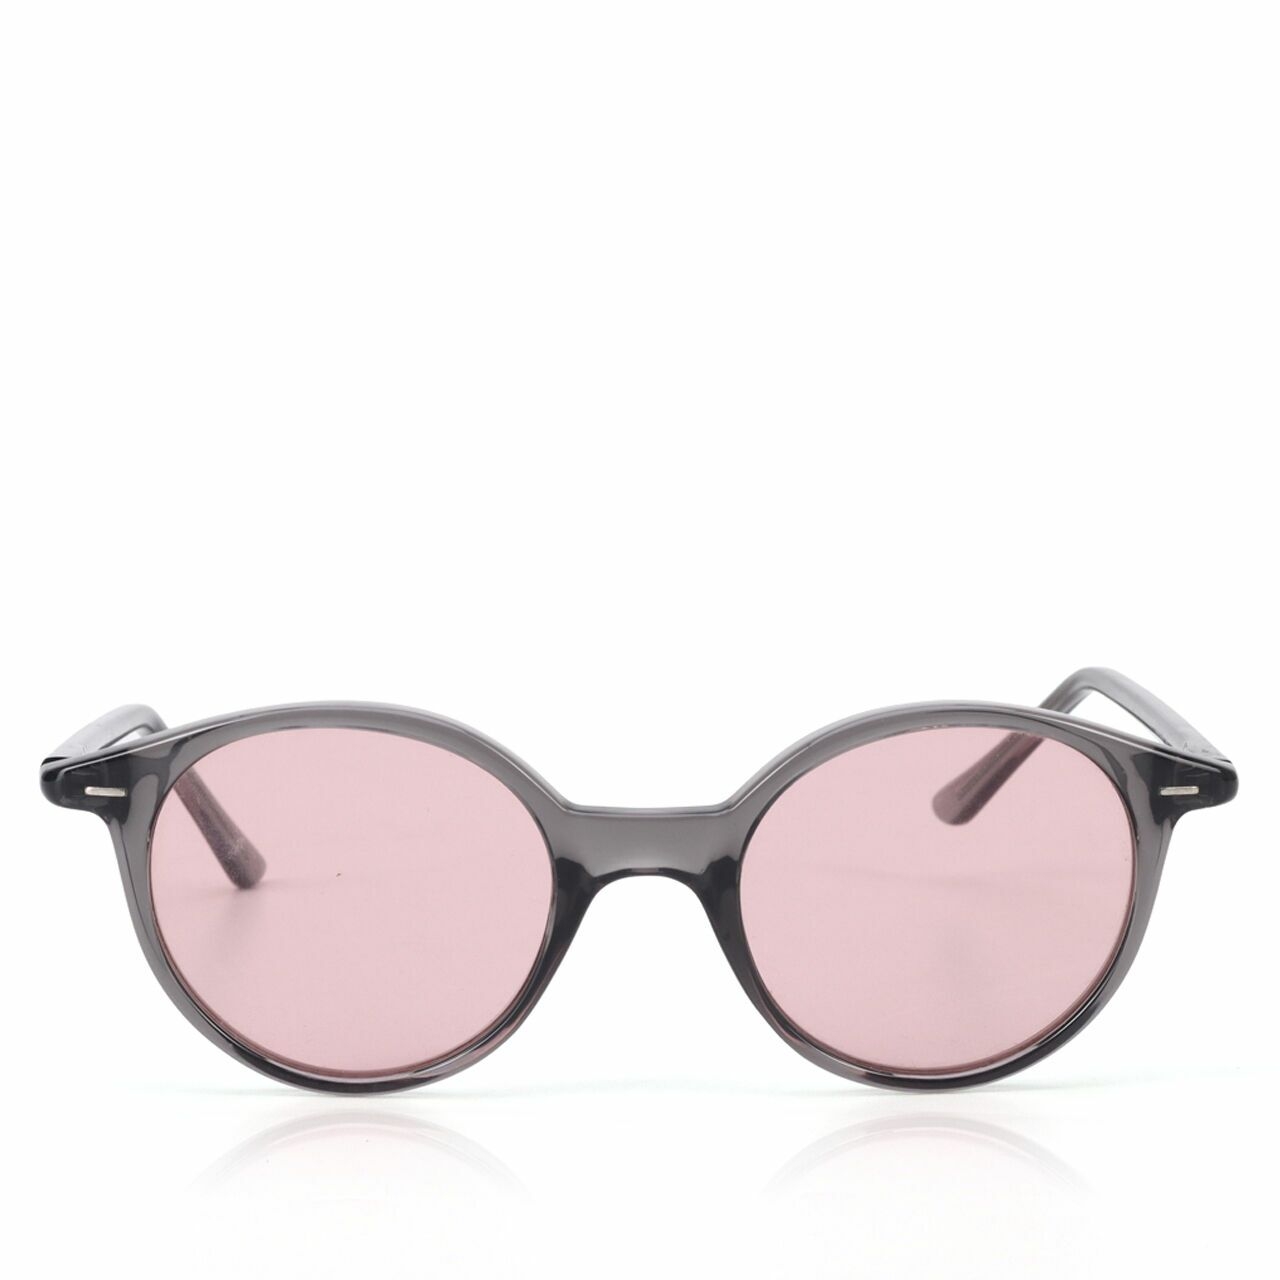 Private Collection Dark Grey Sunglasses